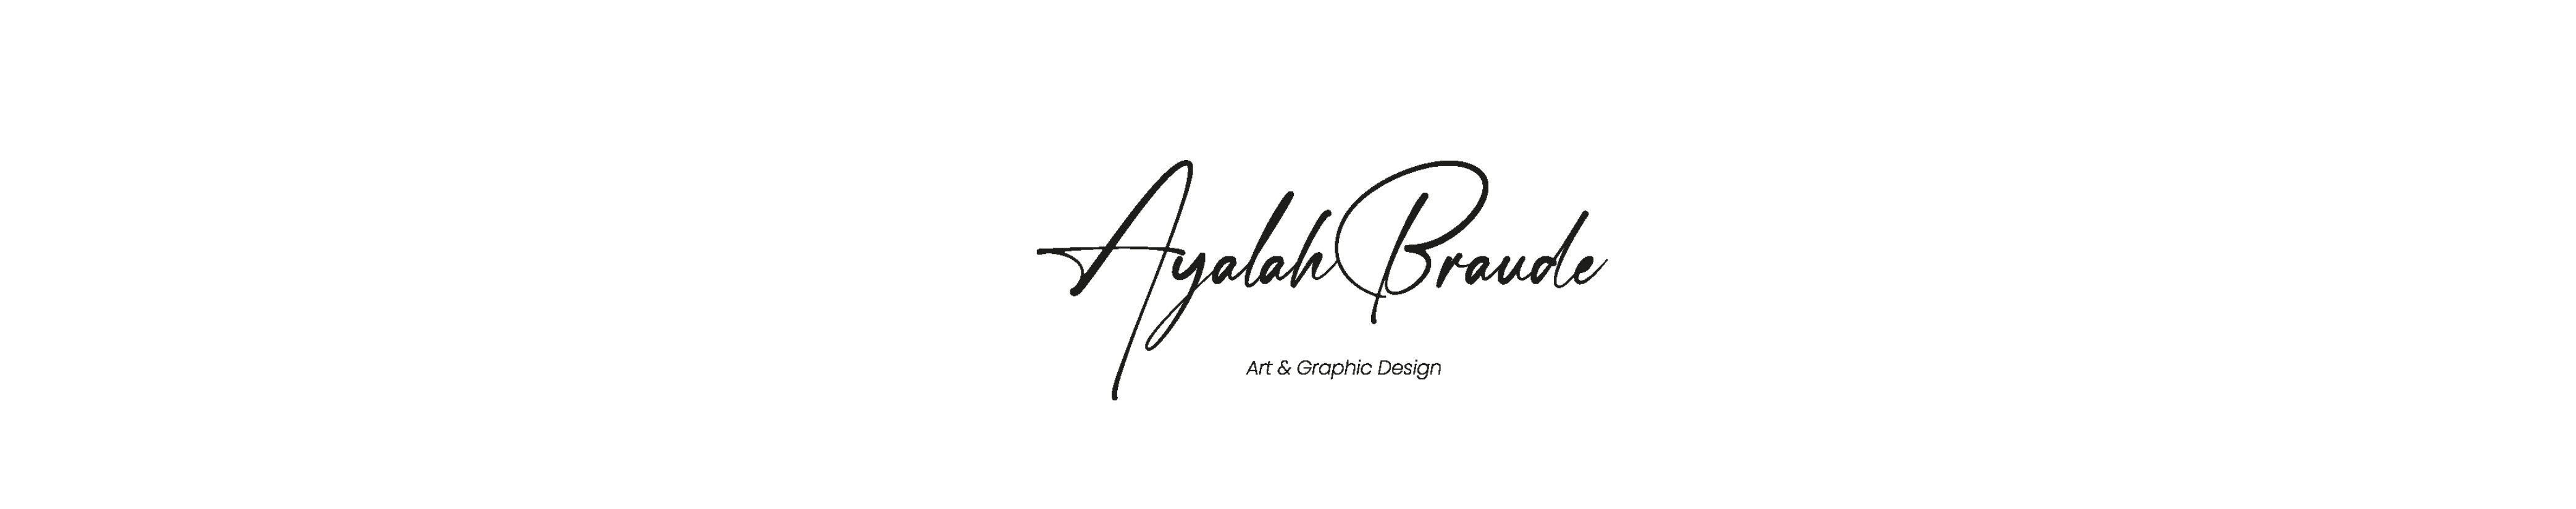 Ayalah Braudes profilbanner